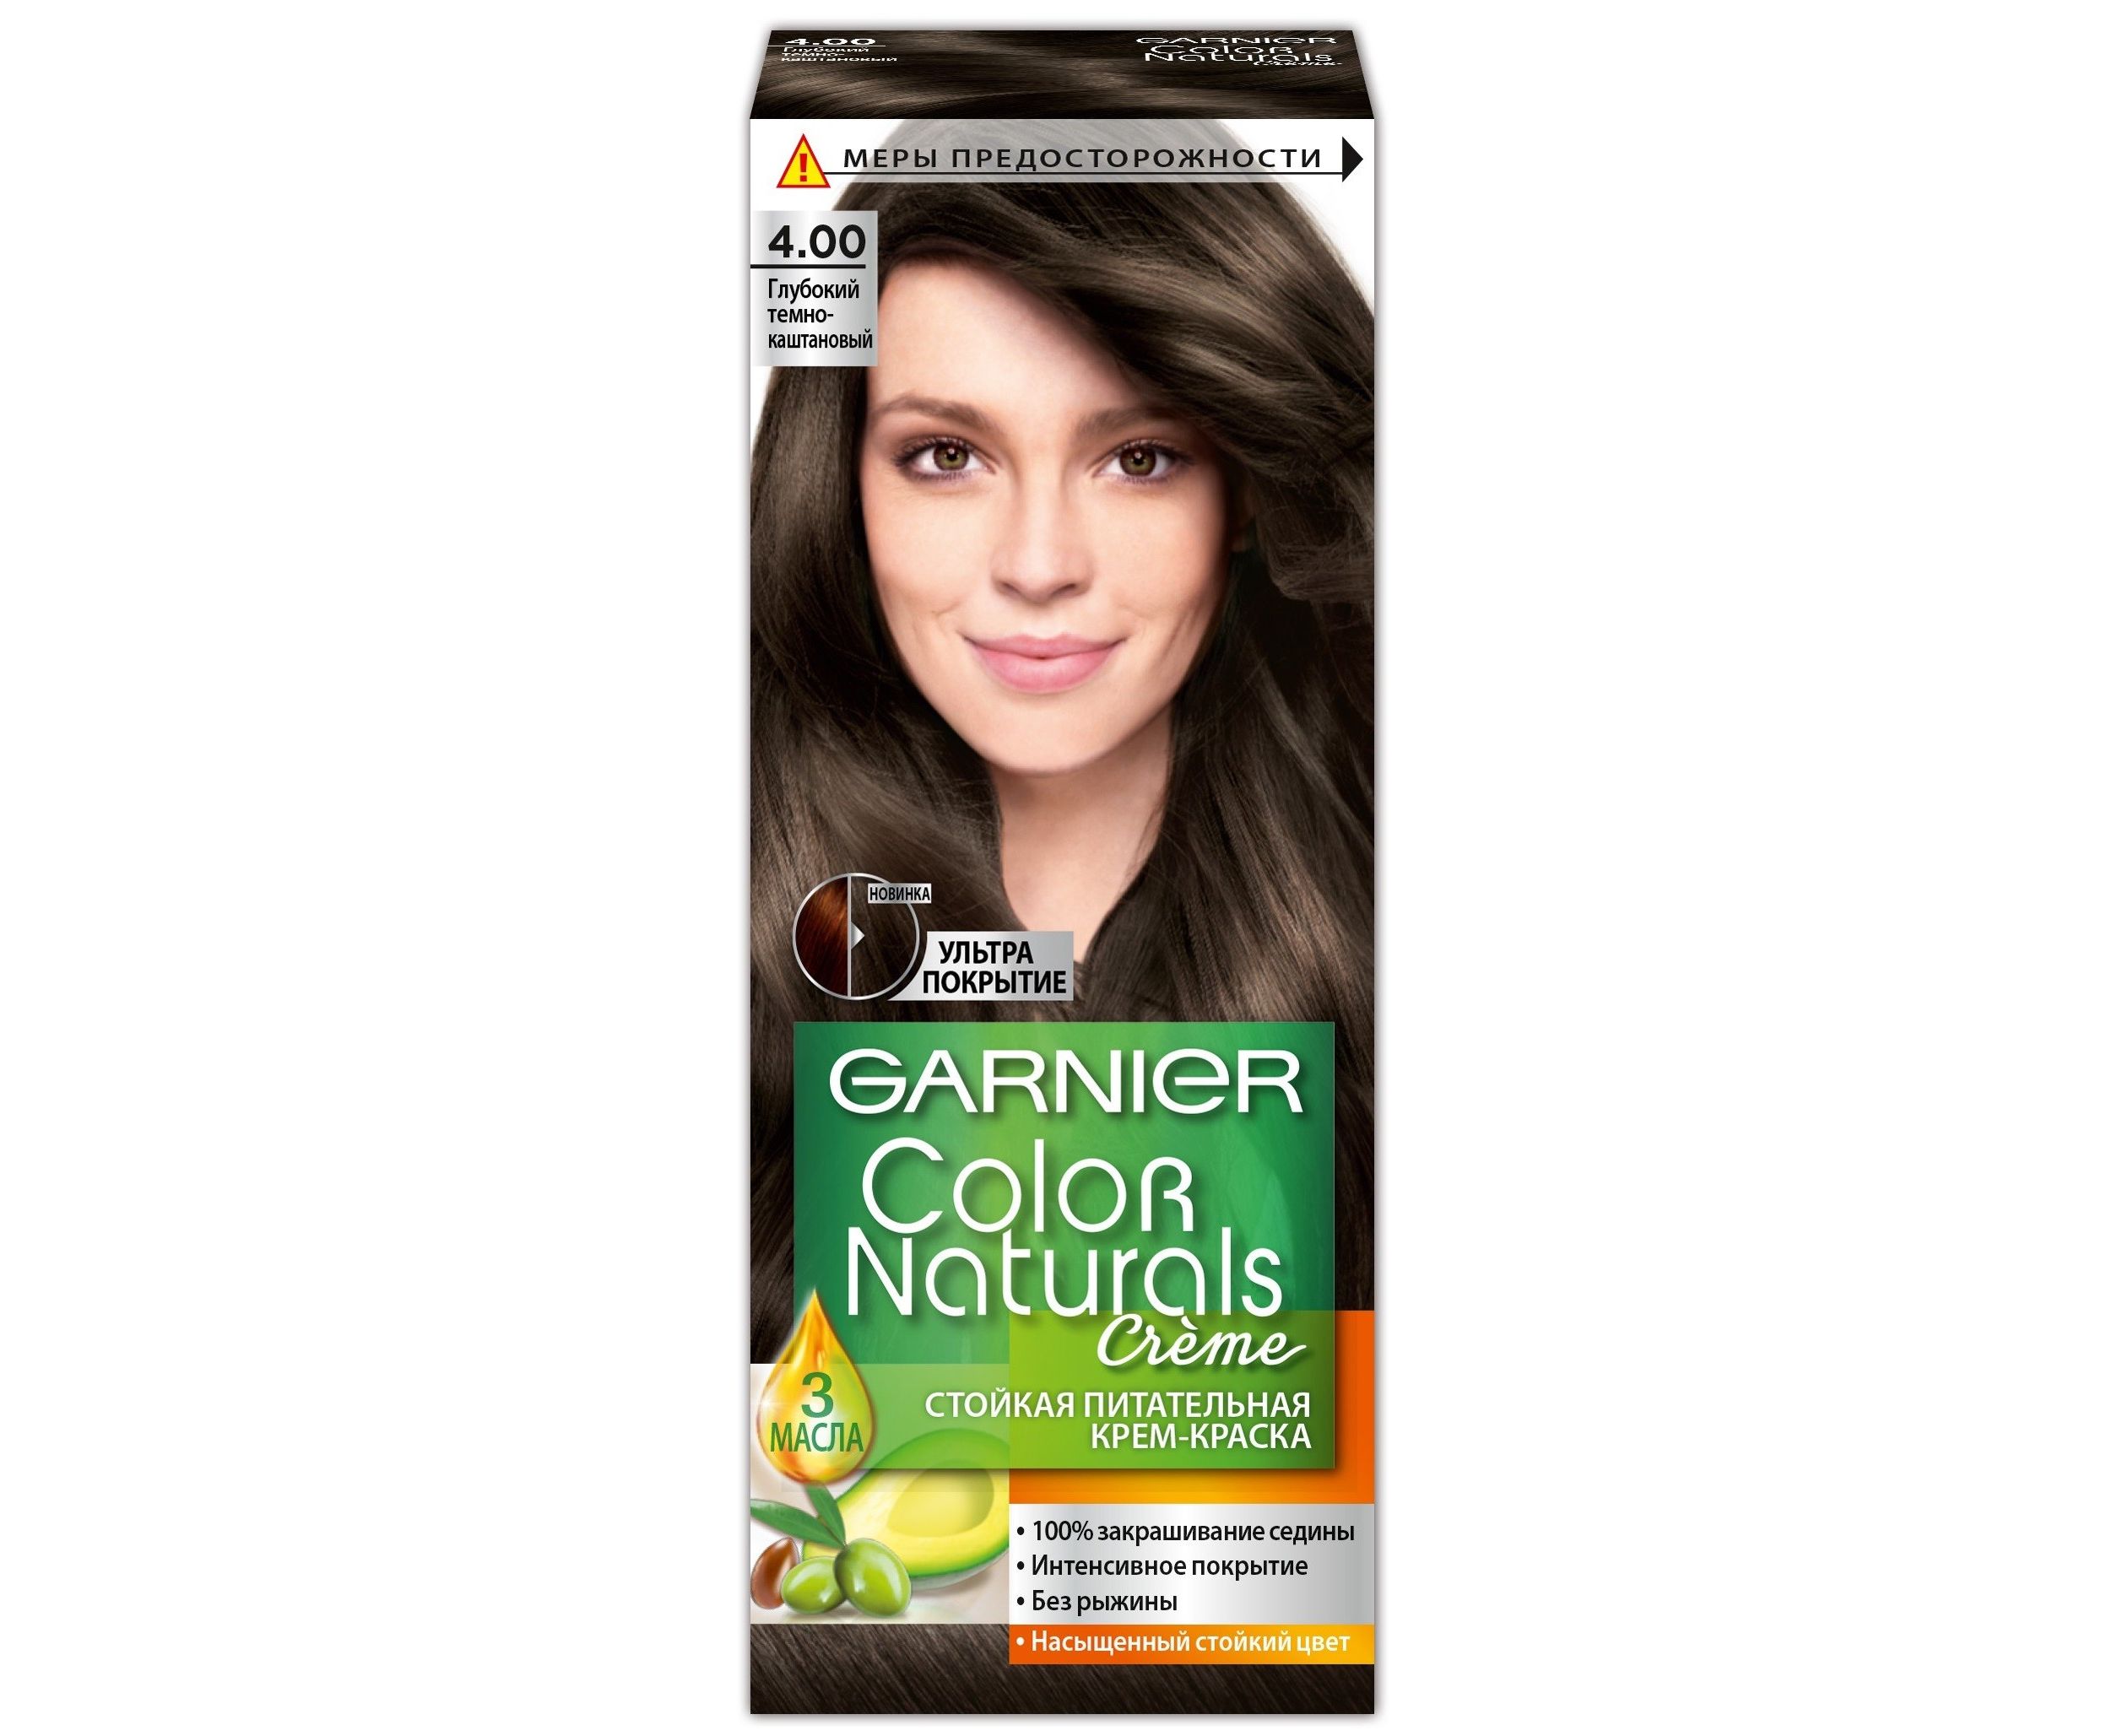 Крем-краска для волос Garnier Color Naturals, 4.0 глубокий темно-каштановый, 110 мл крем краска garnier color naturals 112 суперосветляющий жемчужно платиновый блонд 120 мл